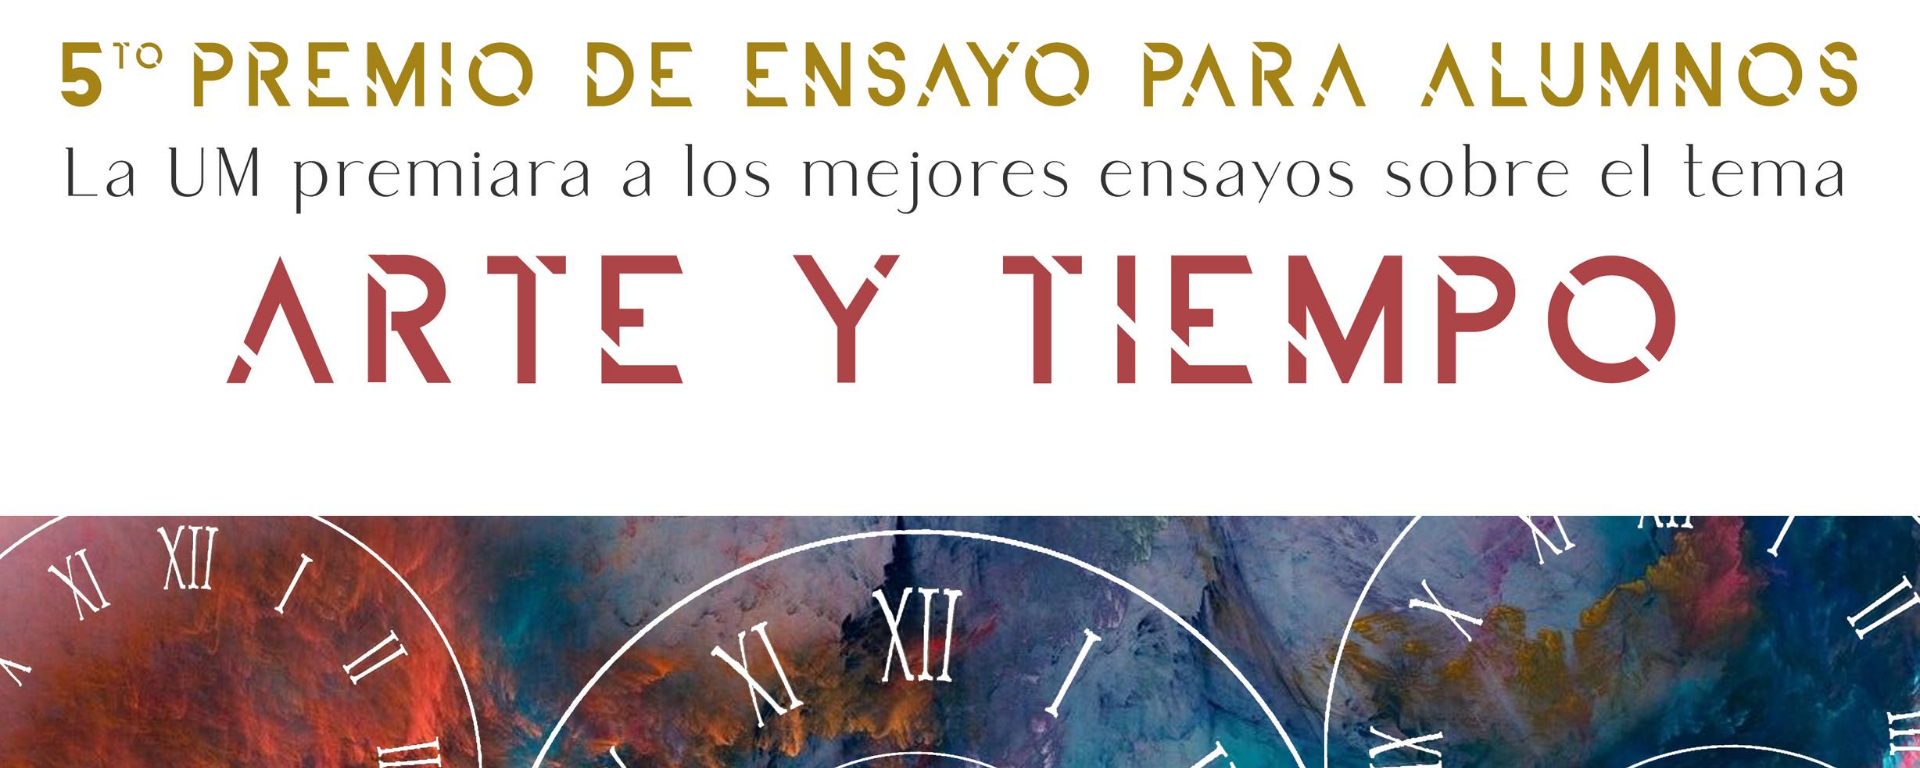 Afiche de la competencia Premio de Ensayo para alumnos.